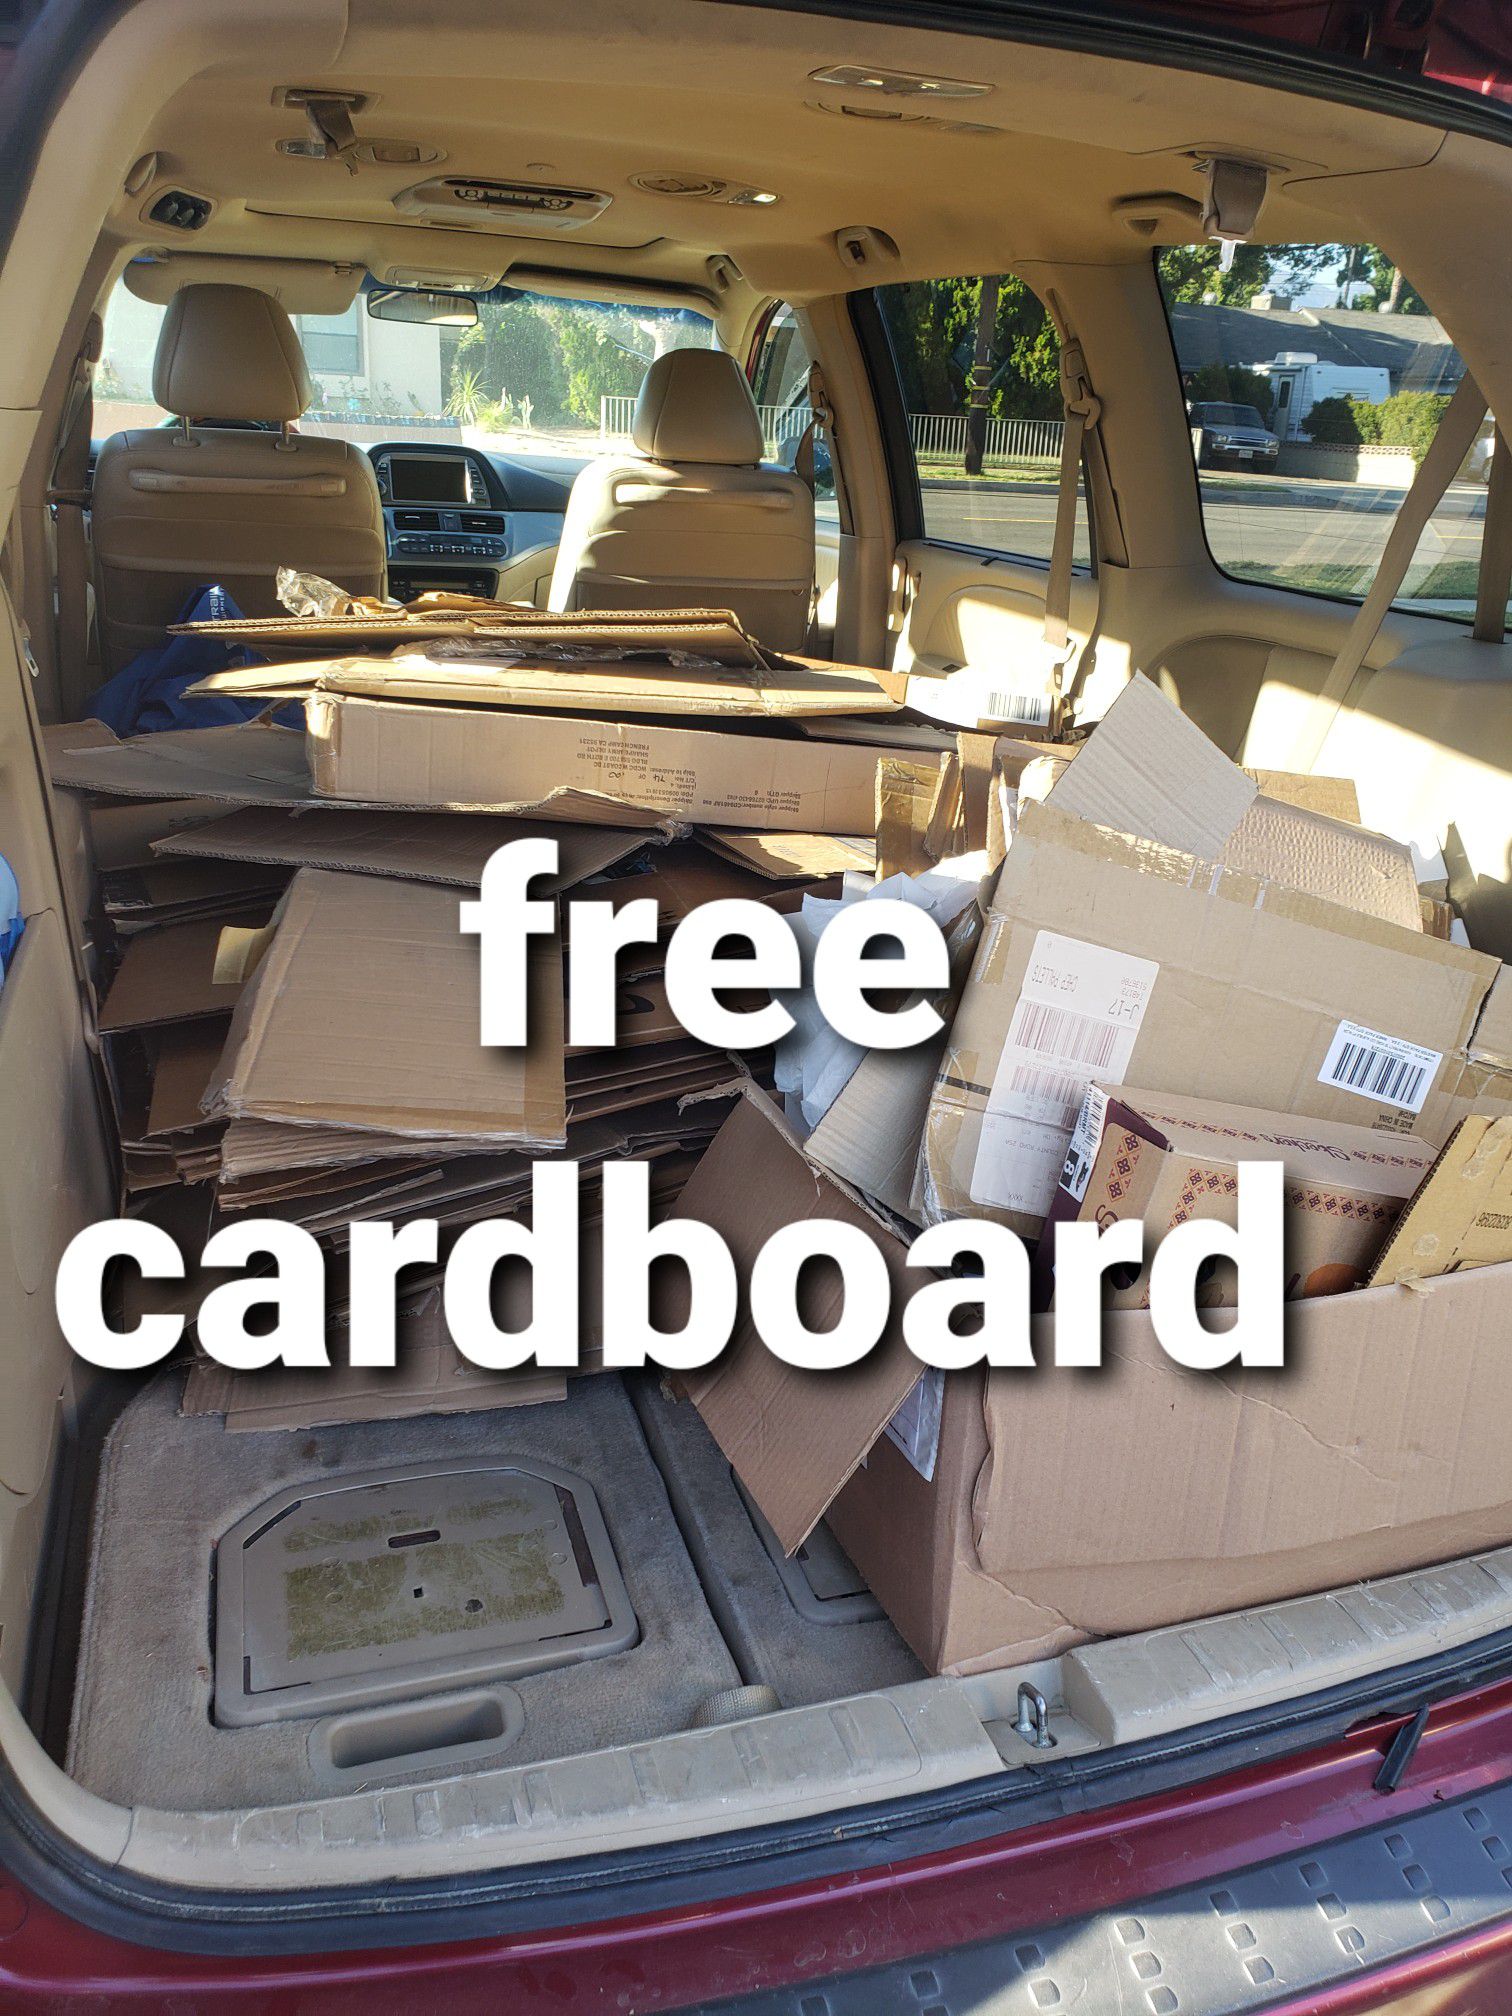 Free cardboard